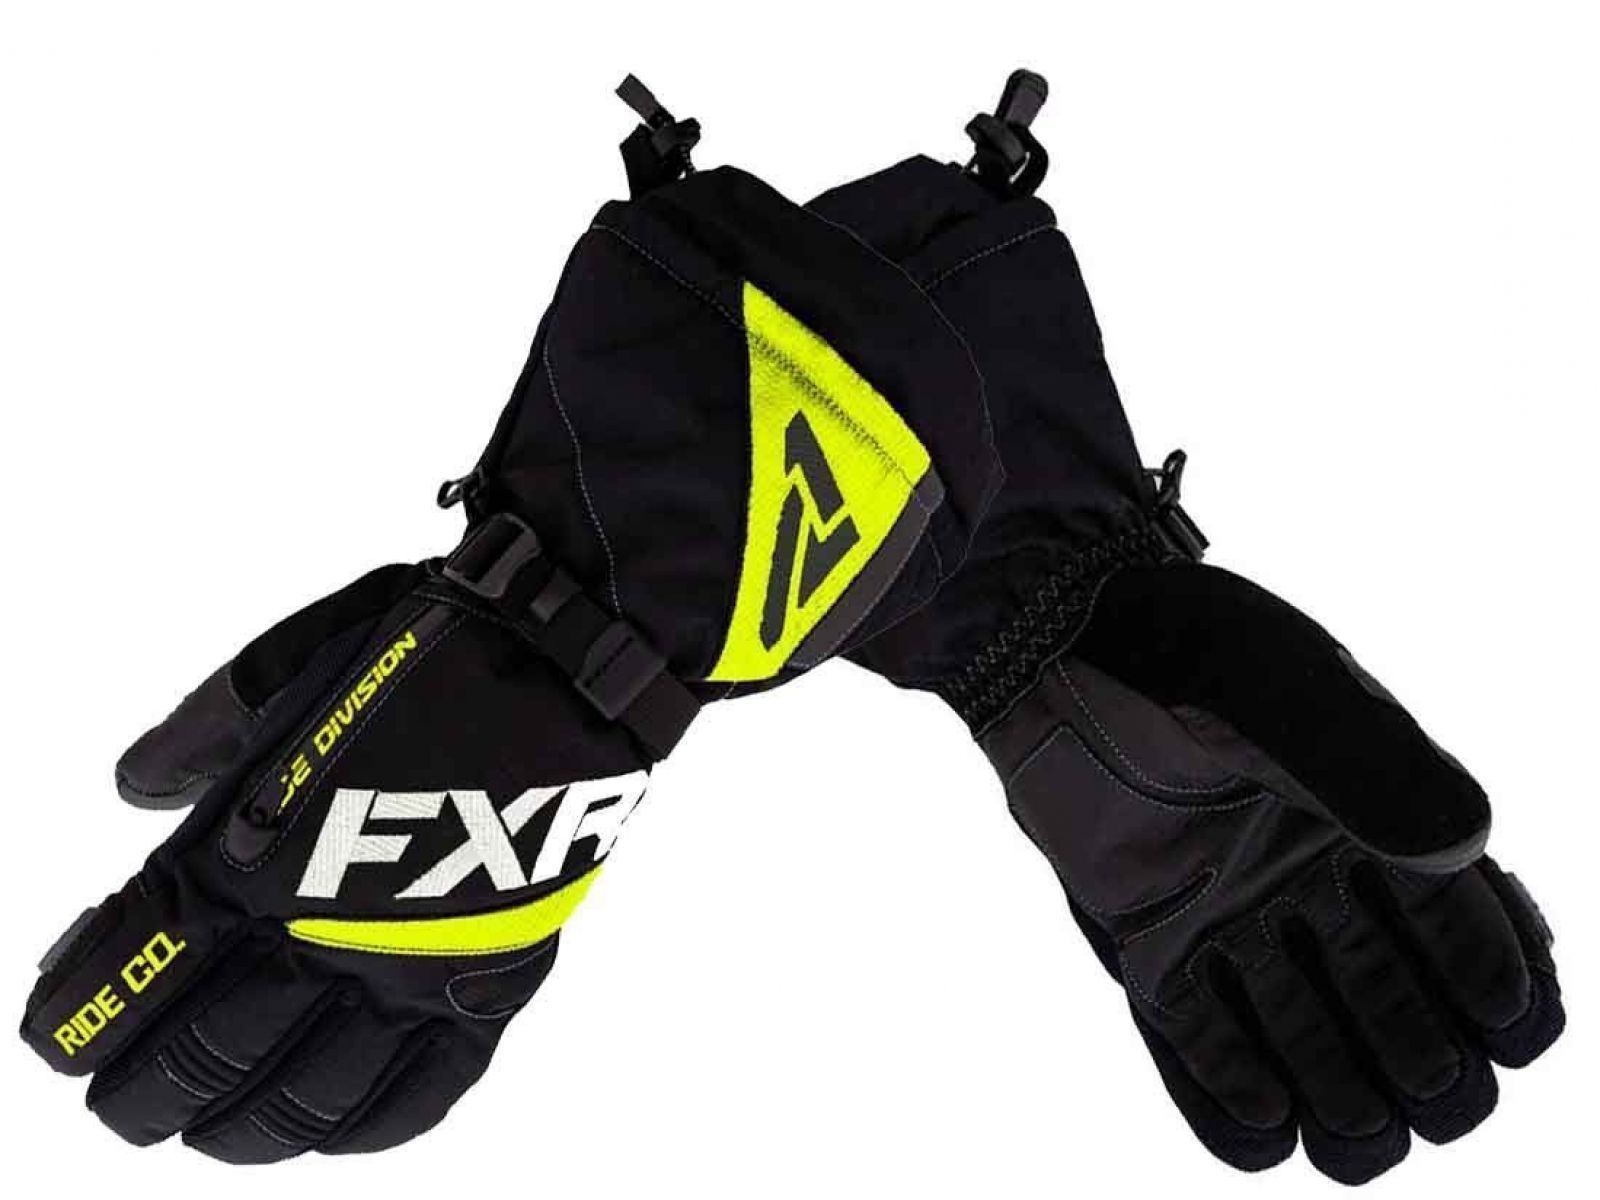 Снегоходные перчатки FXR FUEL 22 Black/Hi Vis